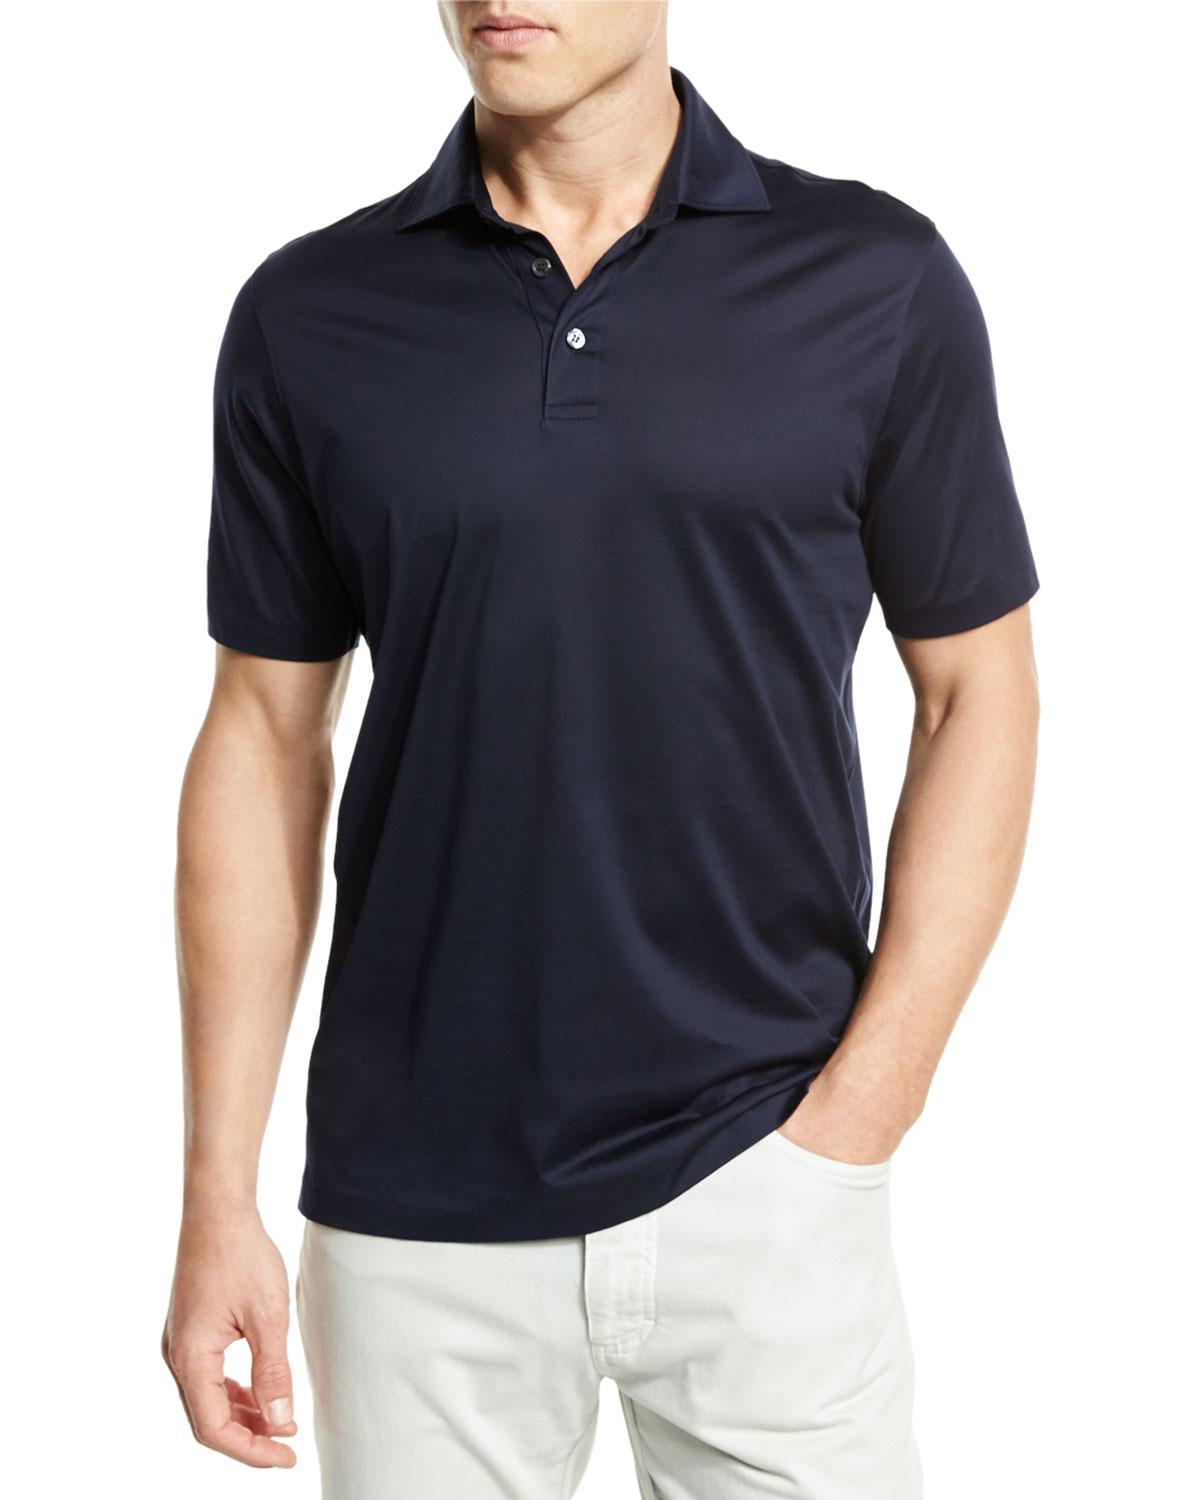 Lyst - Ermenegildo Zegna Mercerized Cotton Polo Shirt Navy in Blue for Men